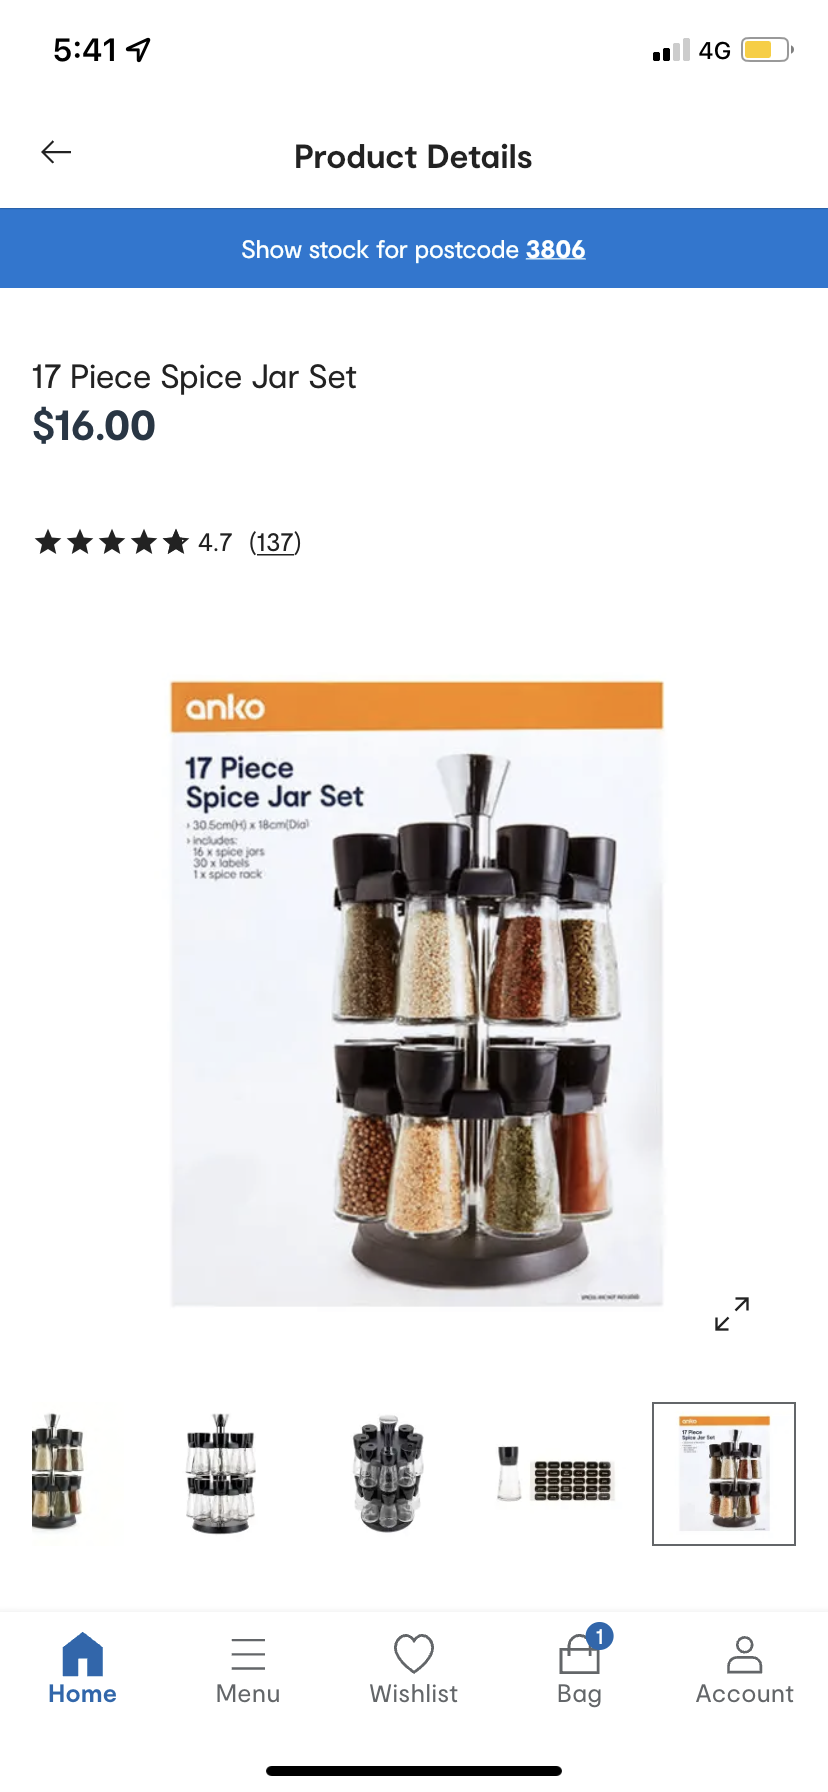 17 piece spice jar set